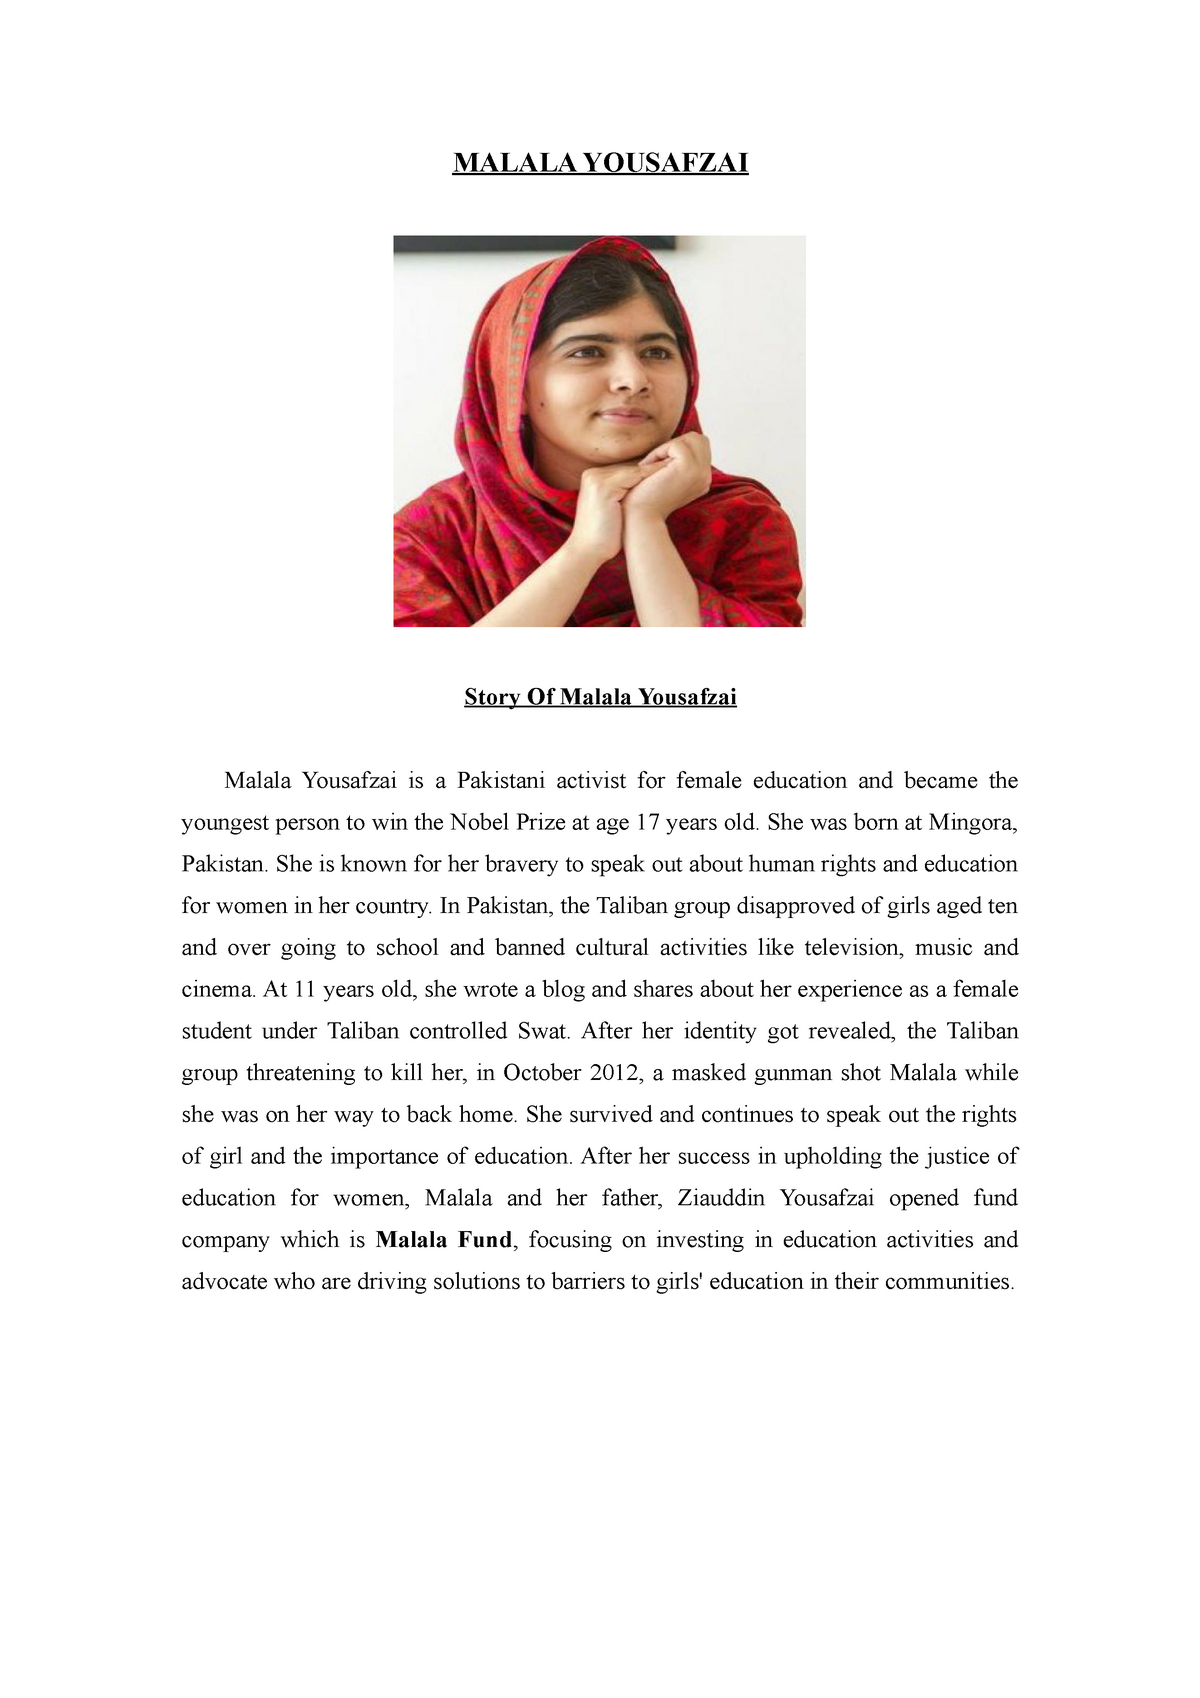 thesis statement about malala yousafzai